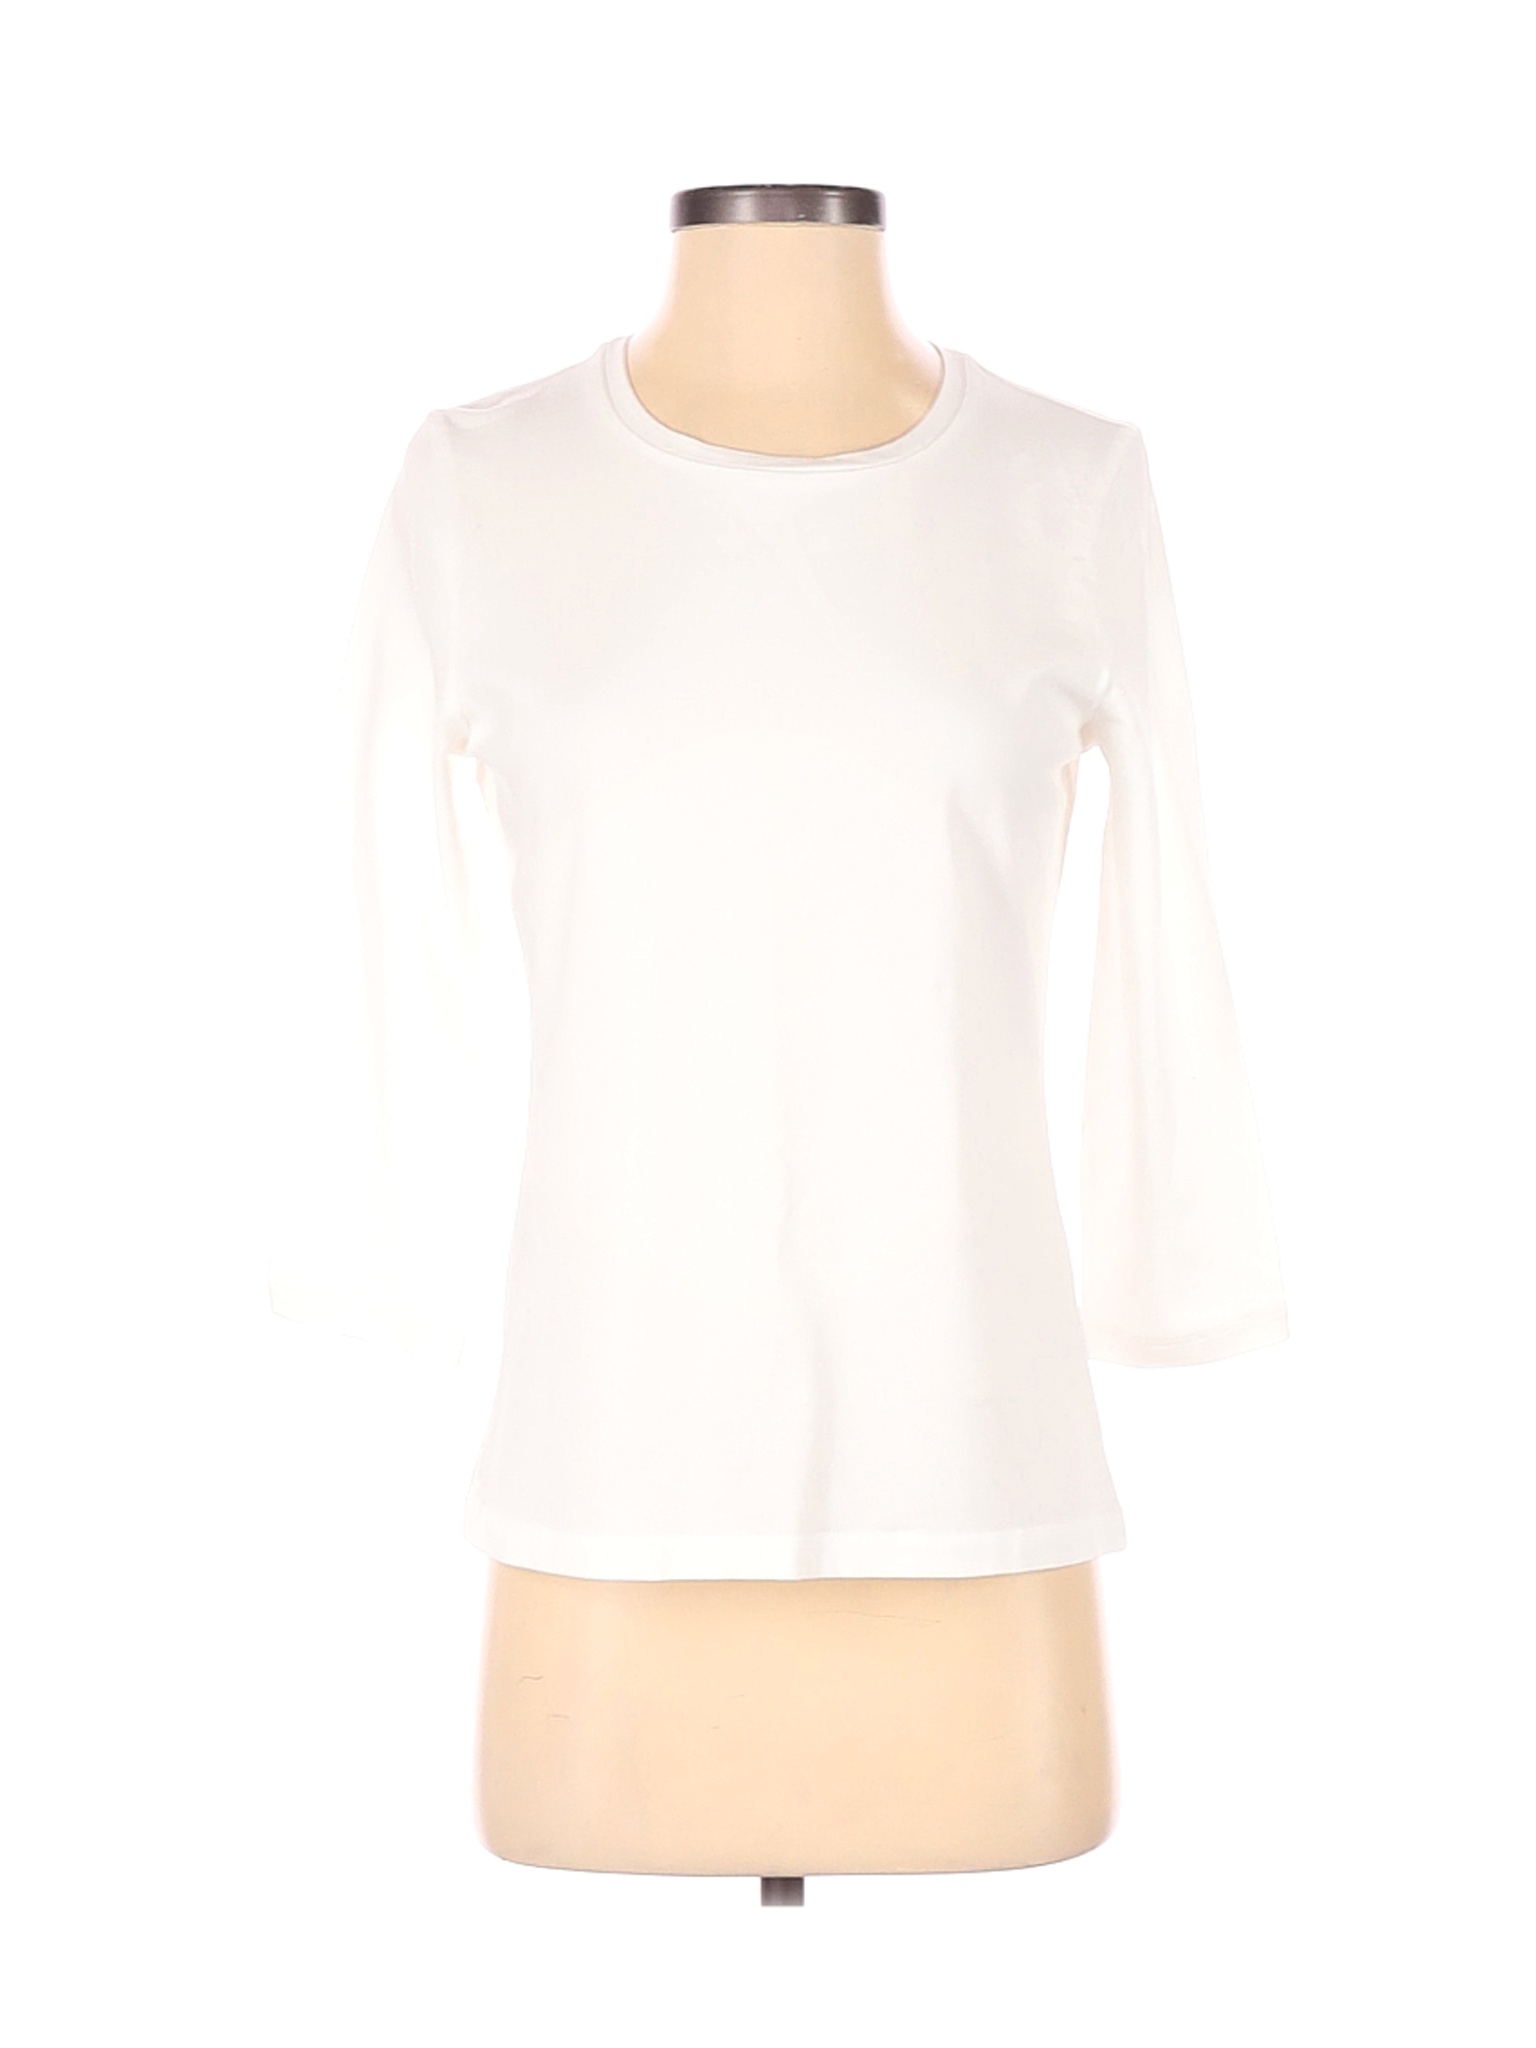 NWT Chico's Women White 3/4 Sleeve T-Shirt S | eBay